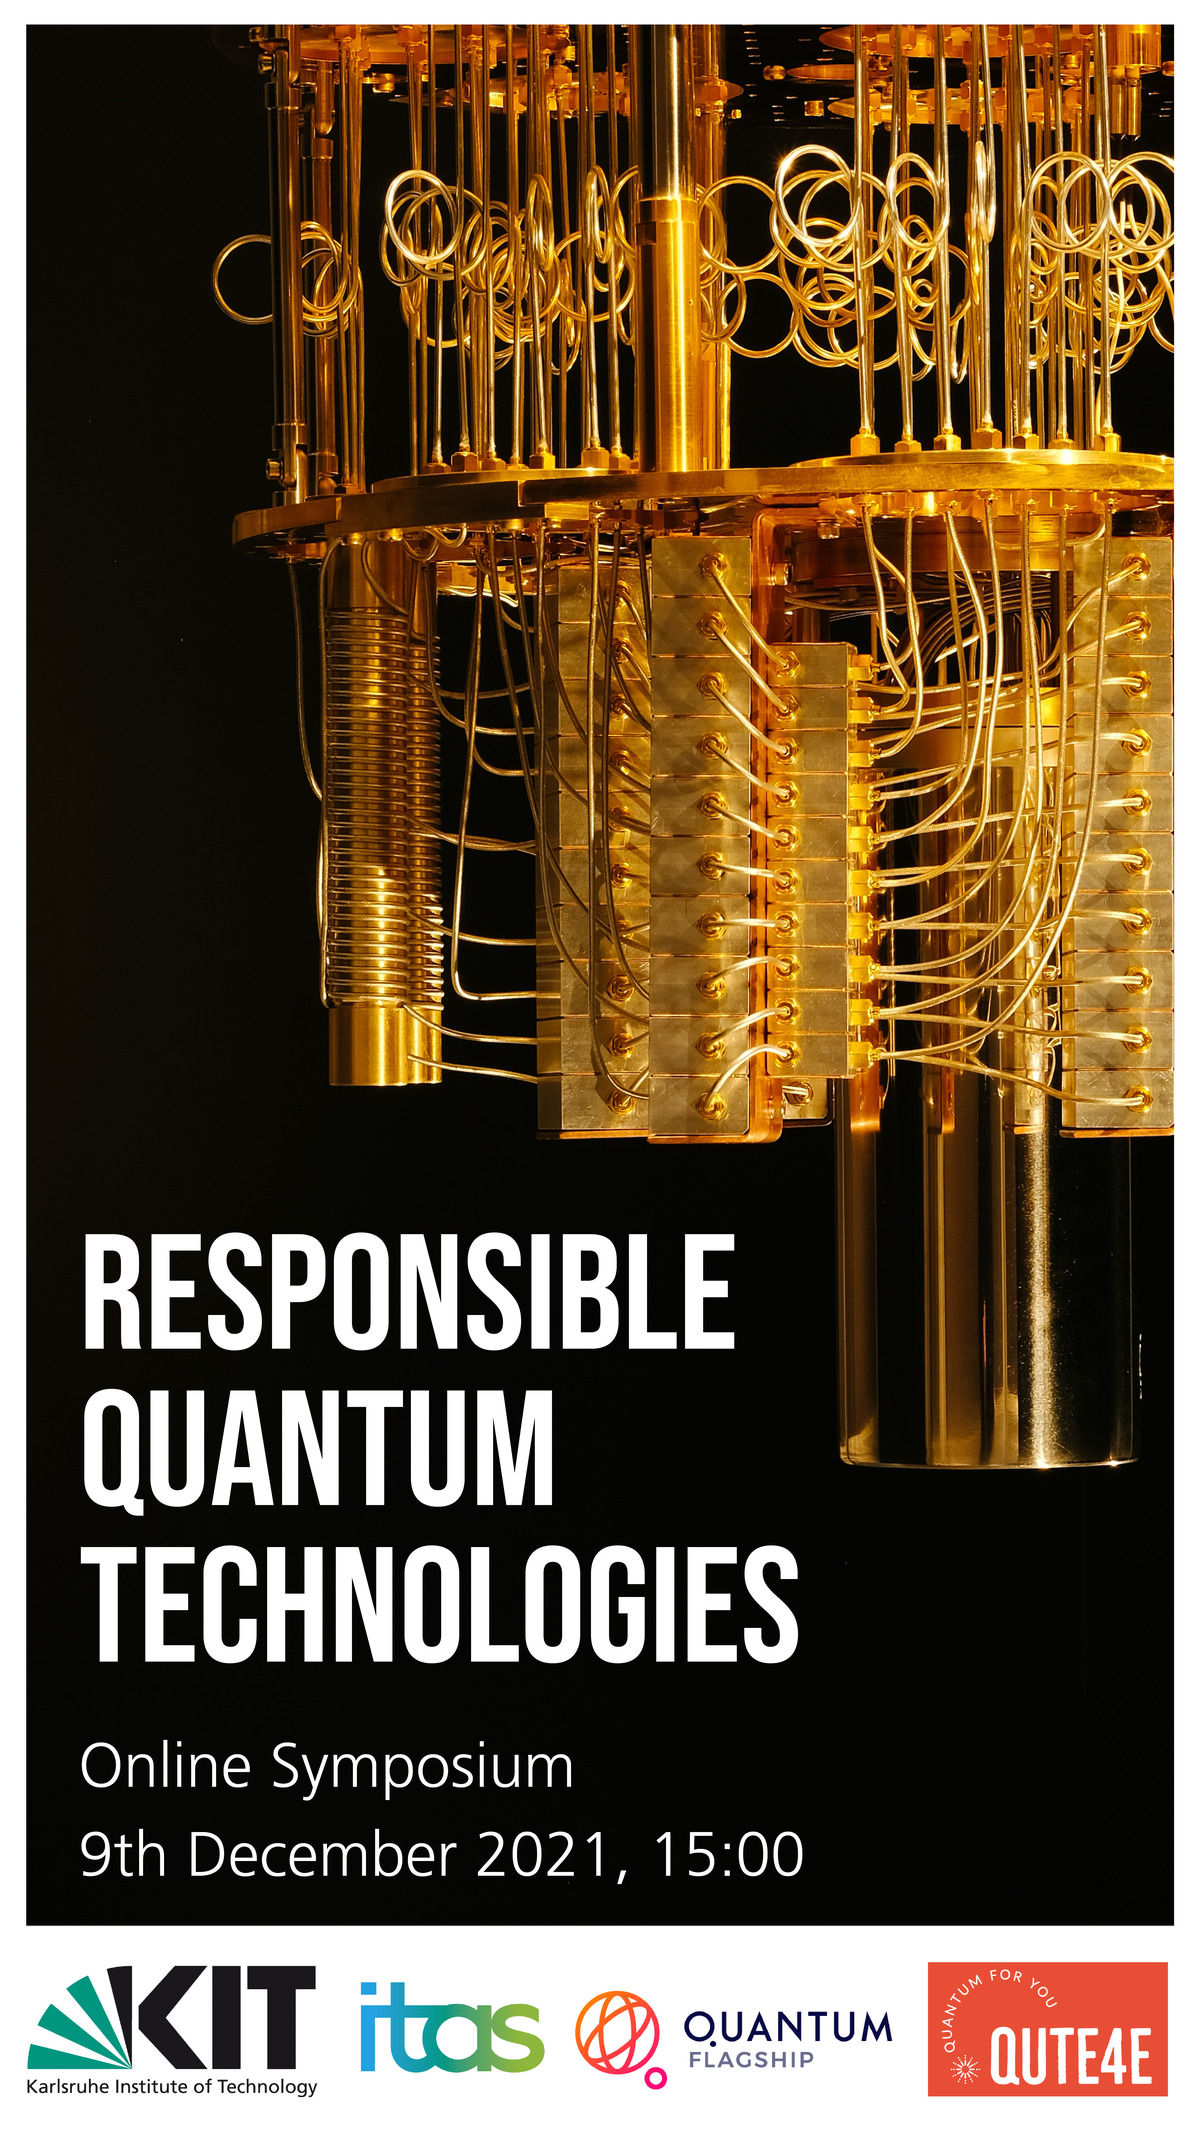 Responsible Quantum Technologies, Online Symposium, 9th December 2021, 15:00